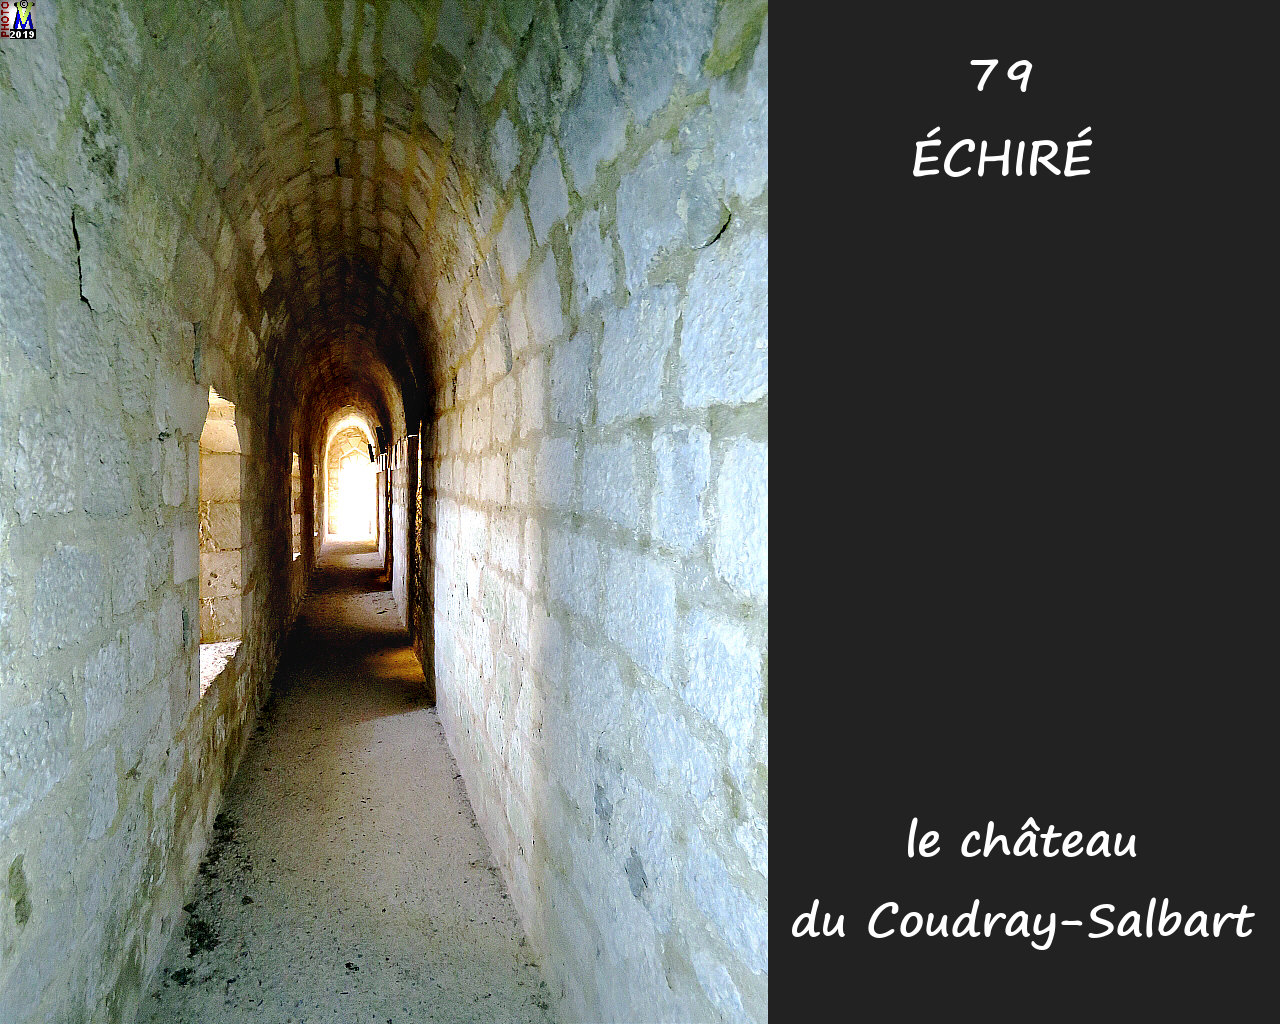 79ECHIRE_chateau_1164.jpg